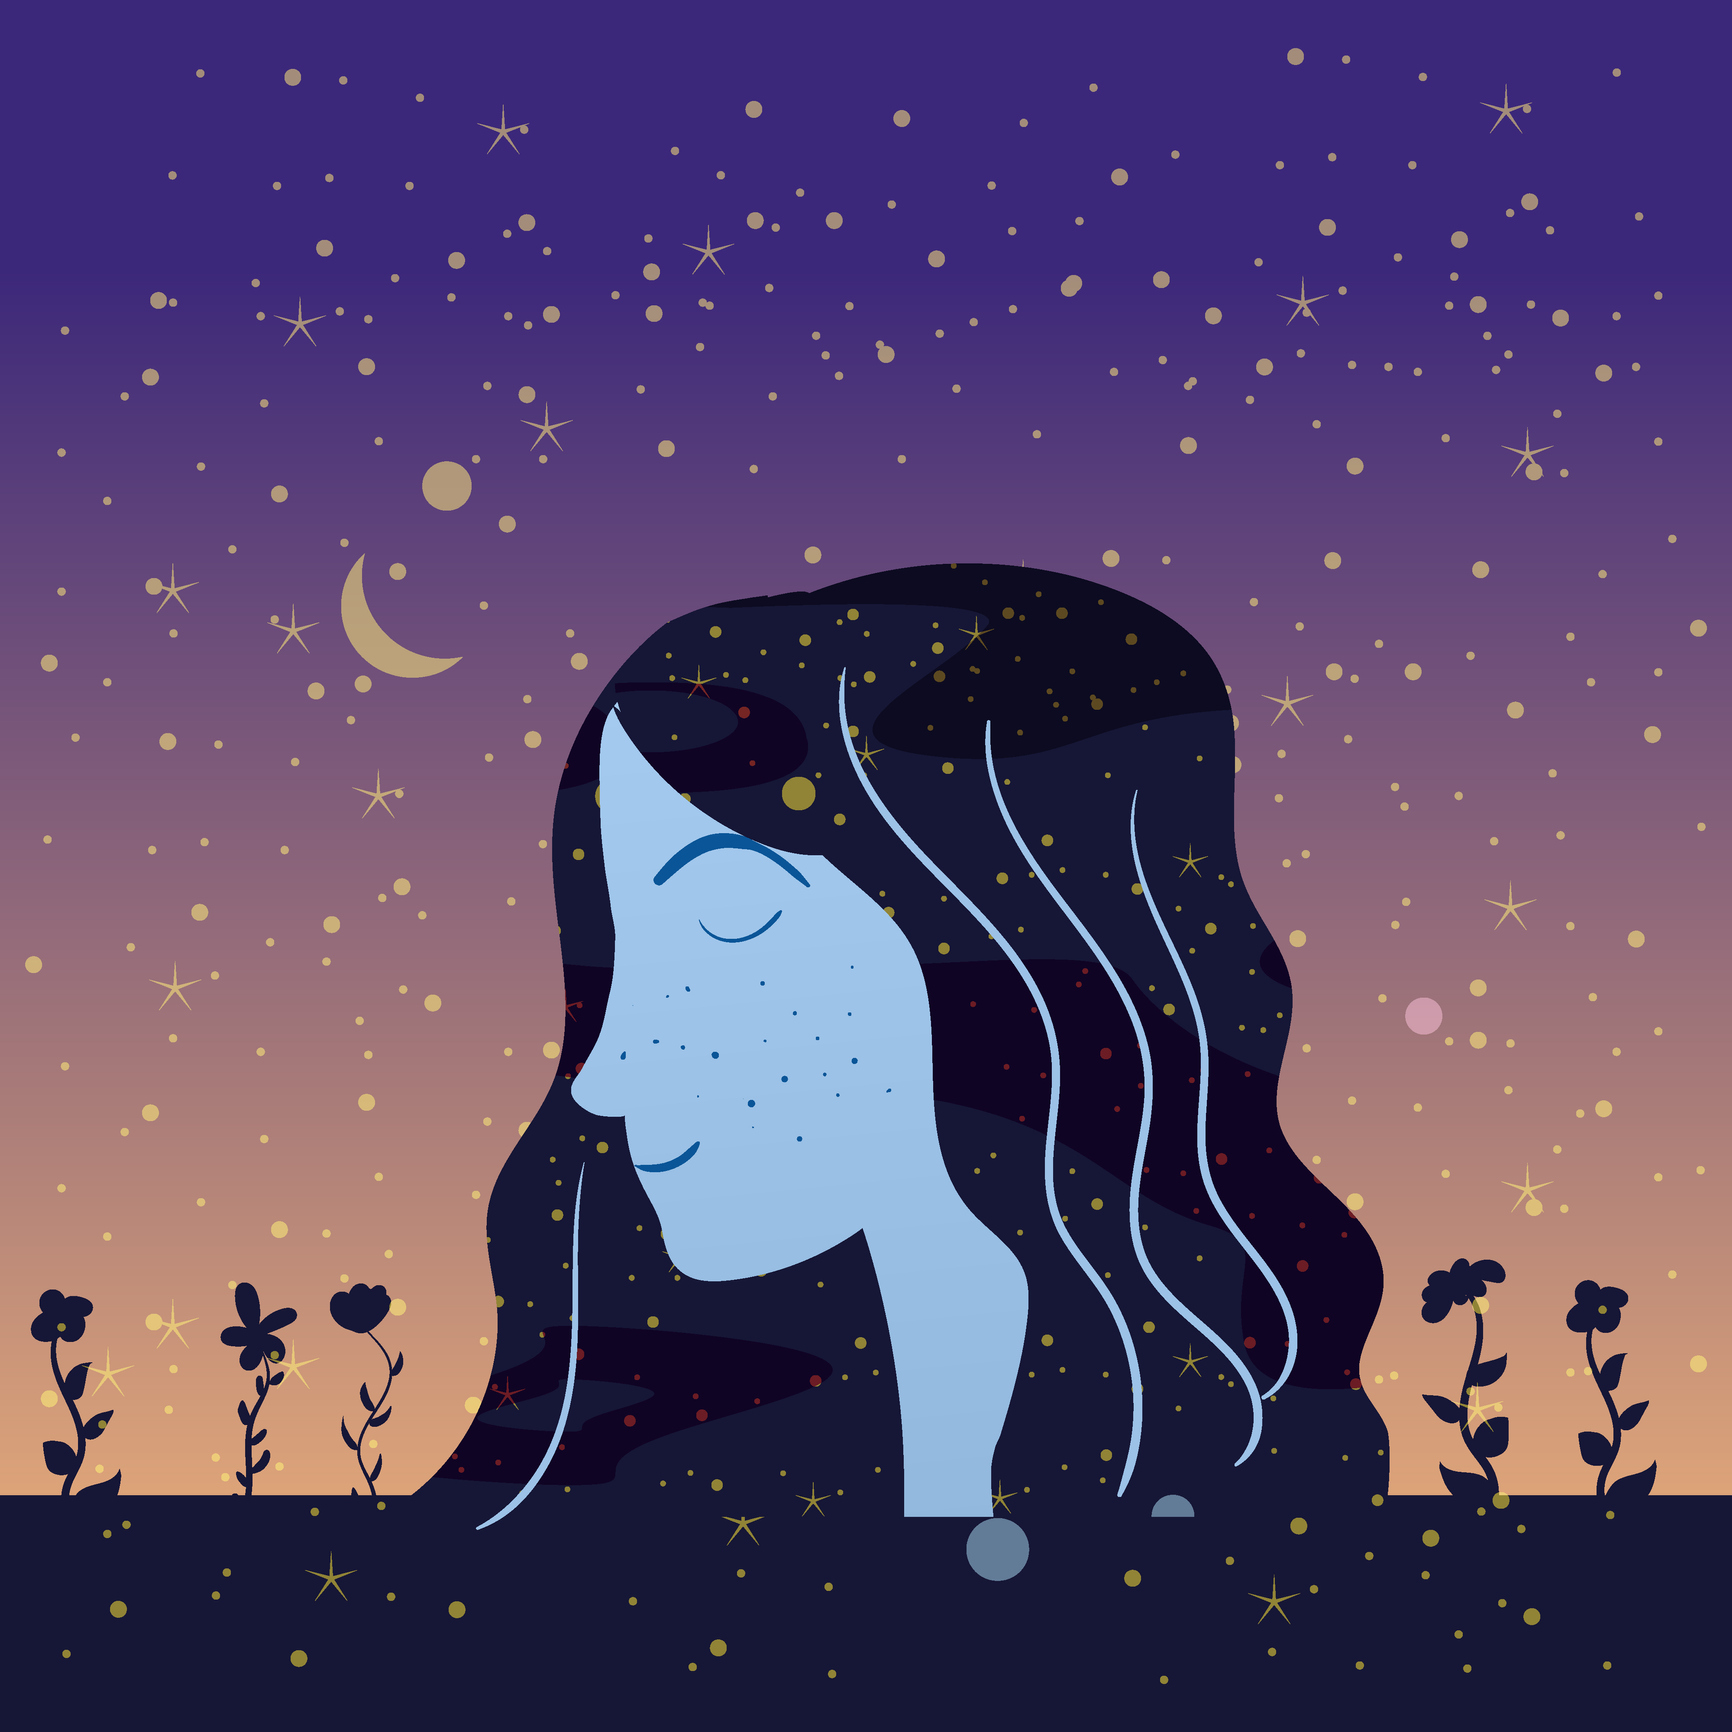 ilustratie cu un cap de femeie dintr-o parte, cu ochii inchisi si parul lung, pe un fundal cu semi luna si stele